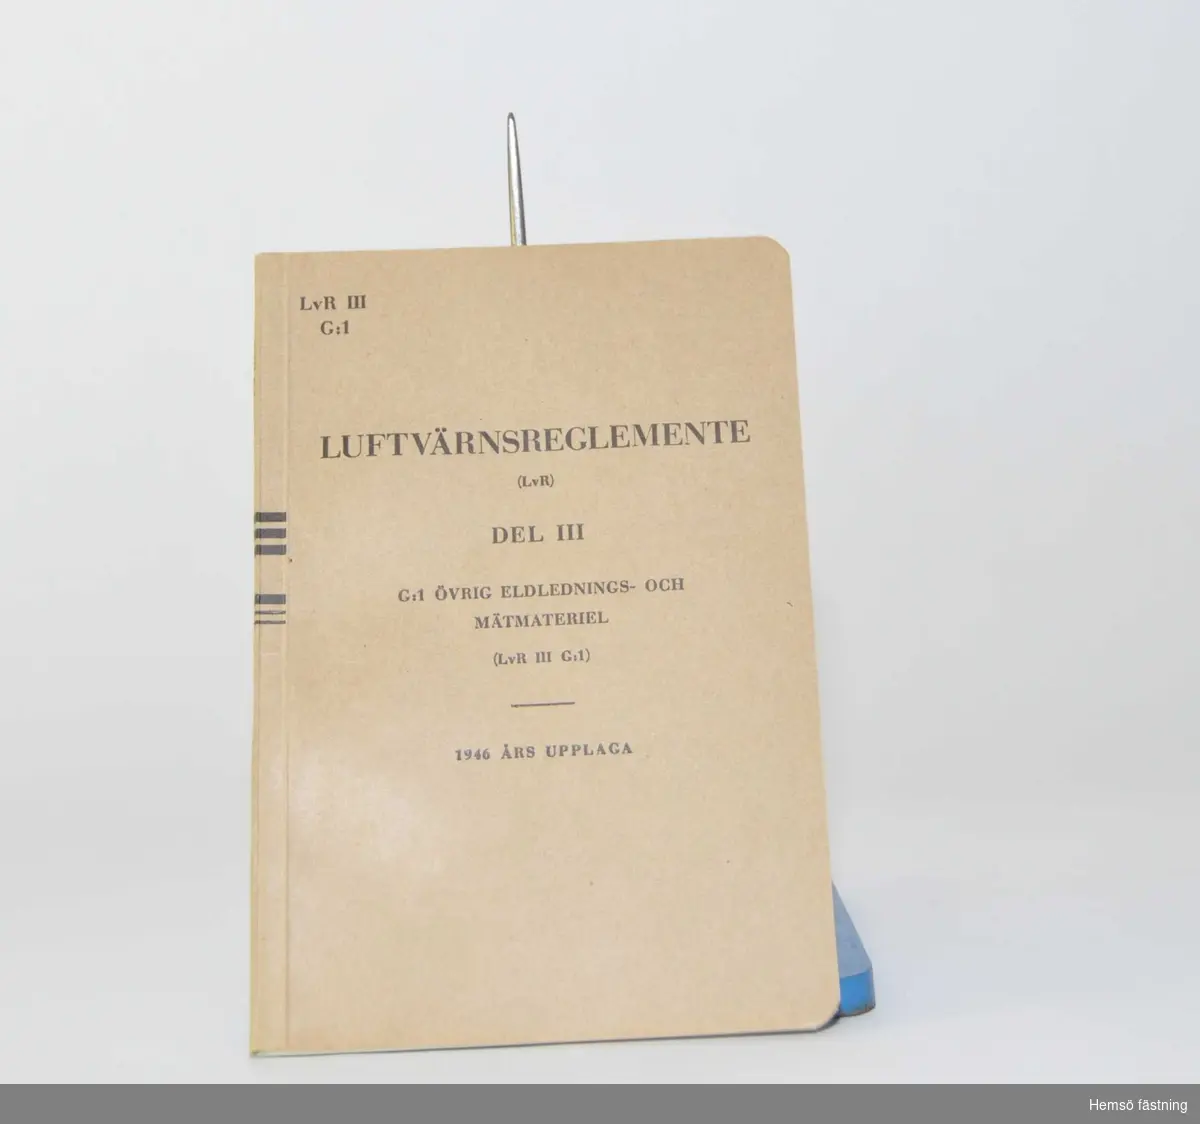 Häfte, Luftvärnsreglemente (LvR) Del III, G:1 Övrig eldlednings. och mätmaterial. 1946 års upplaga